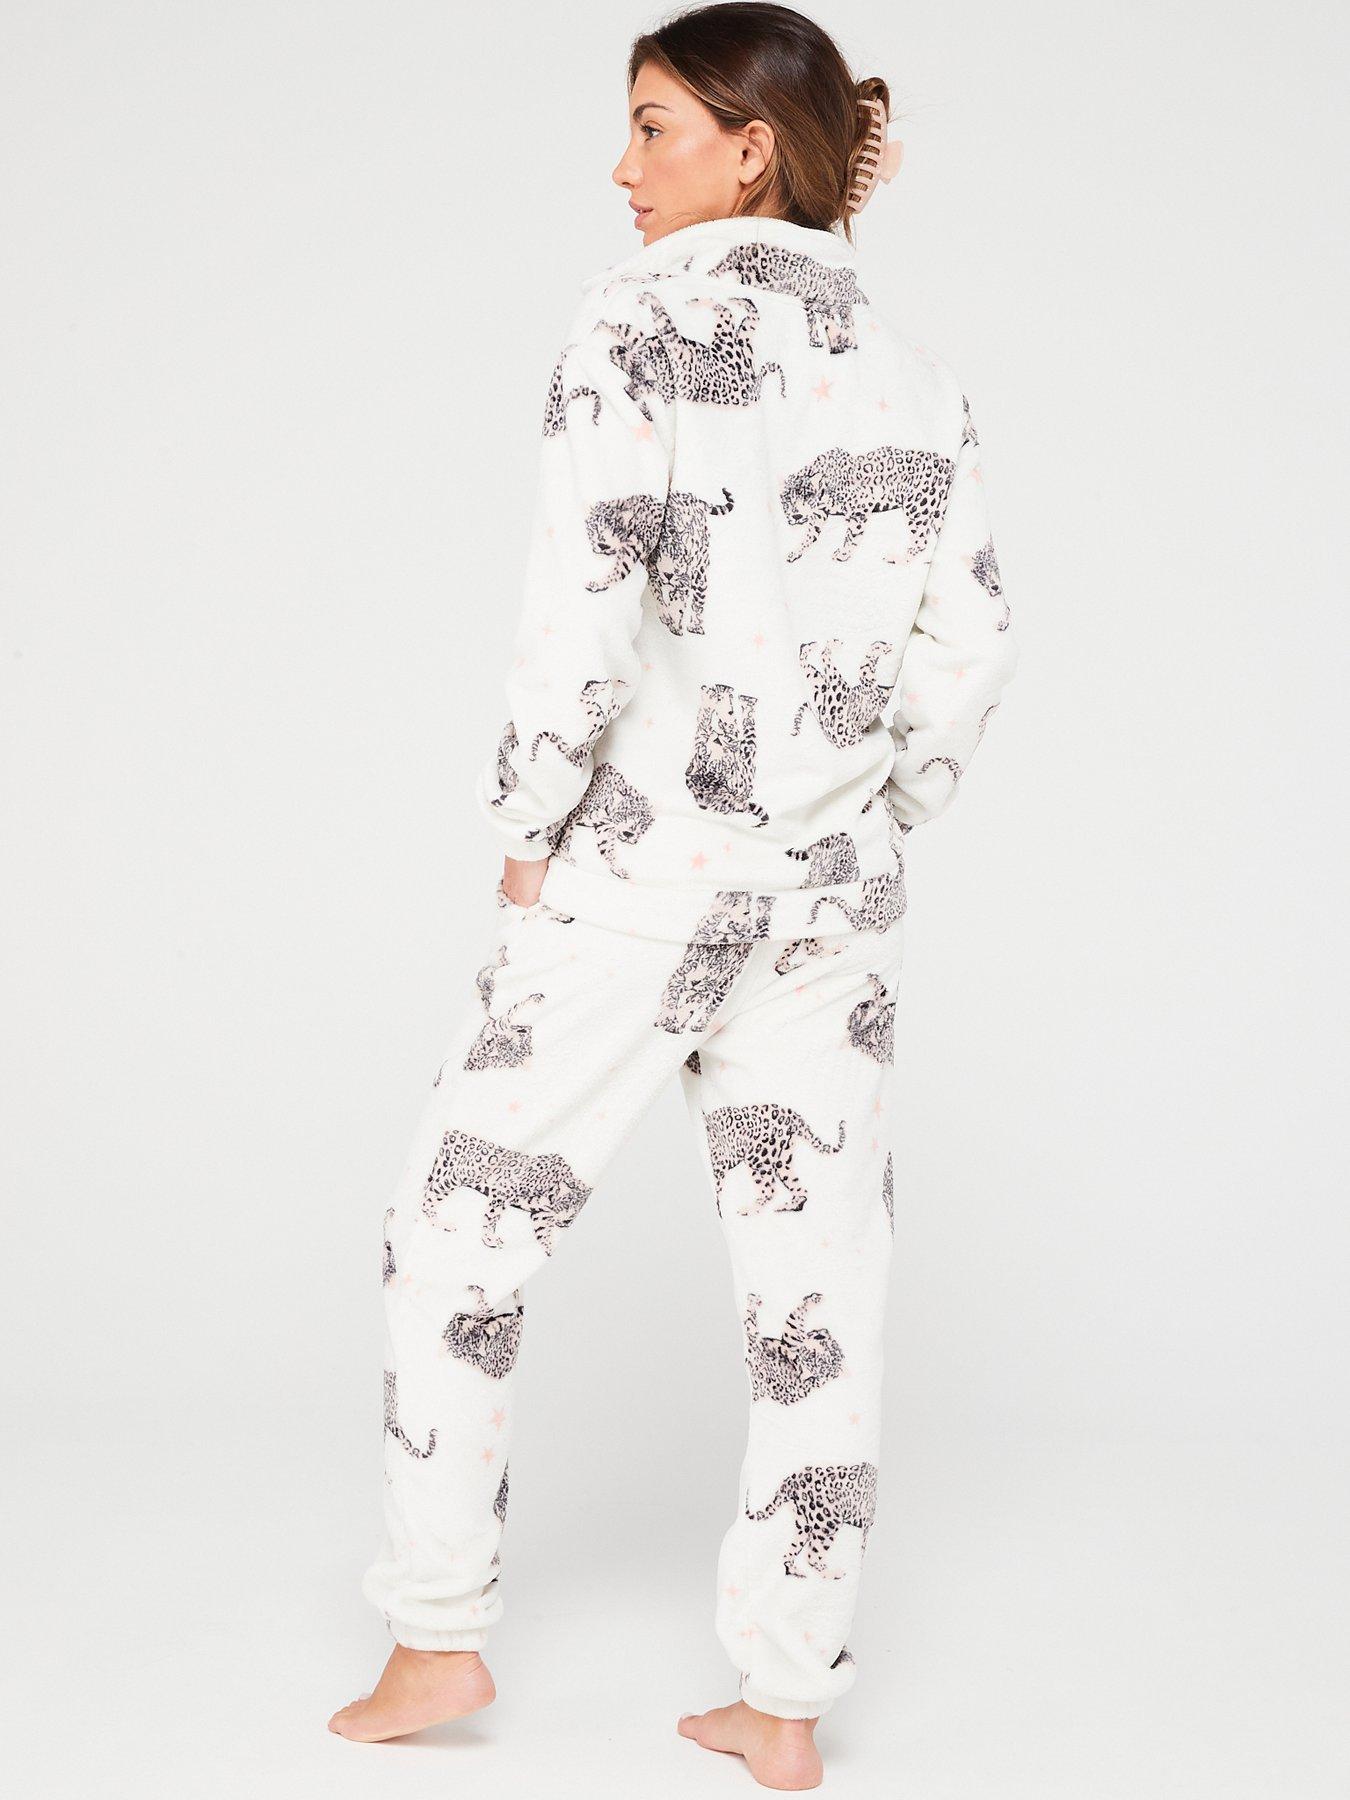 Women Cute Animal Onesie Pajamas Plush Romper Long Sleeve Nightwear Printed  Skinny Printed Playsuit Sleepwear,A103